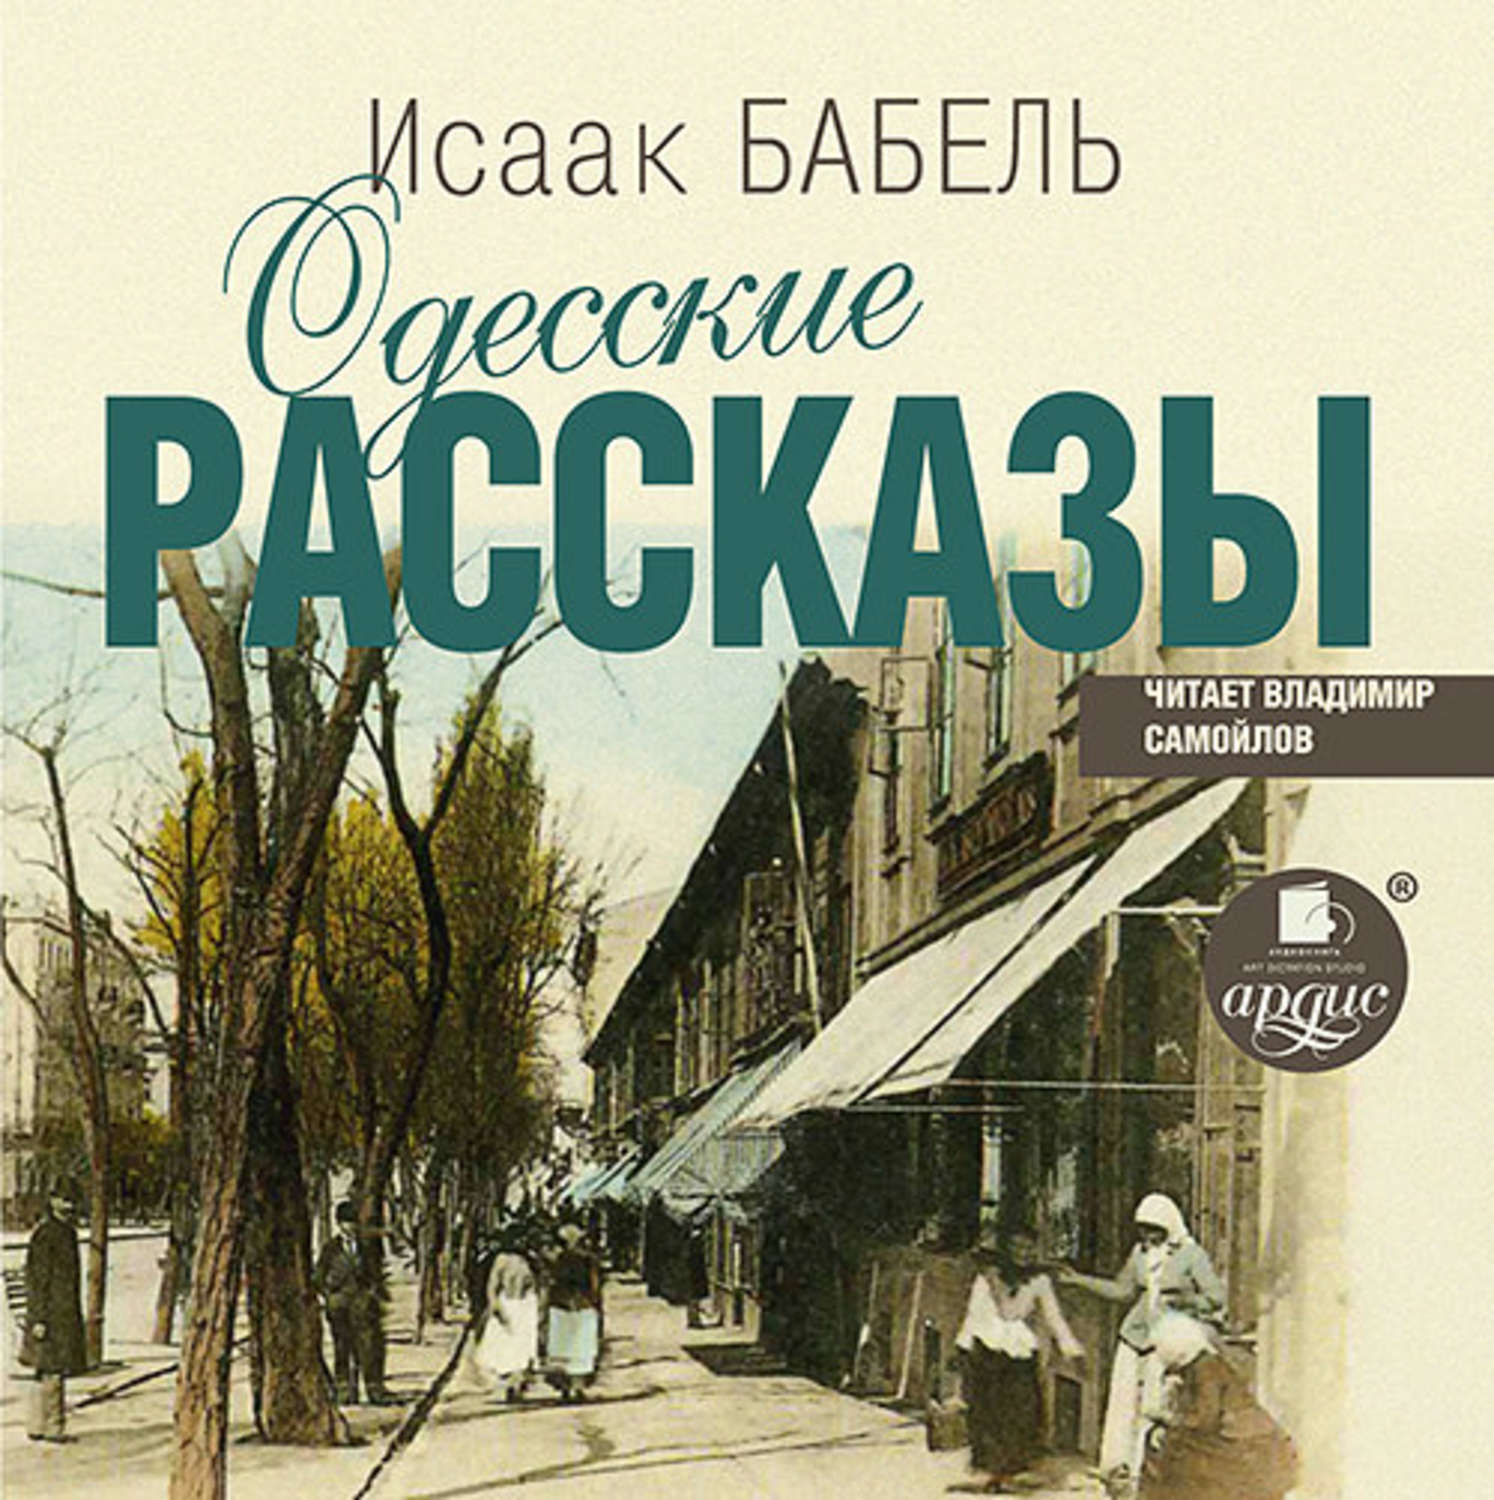 Книга одесские рассказы